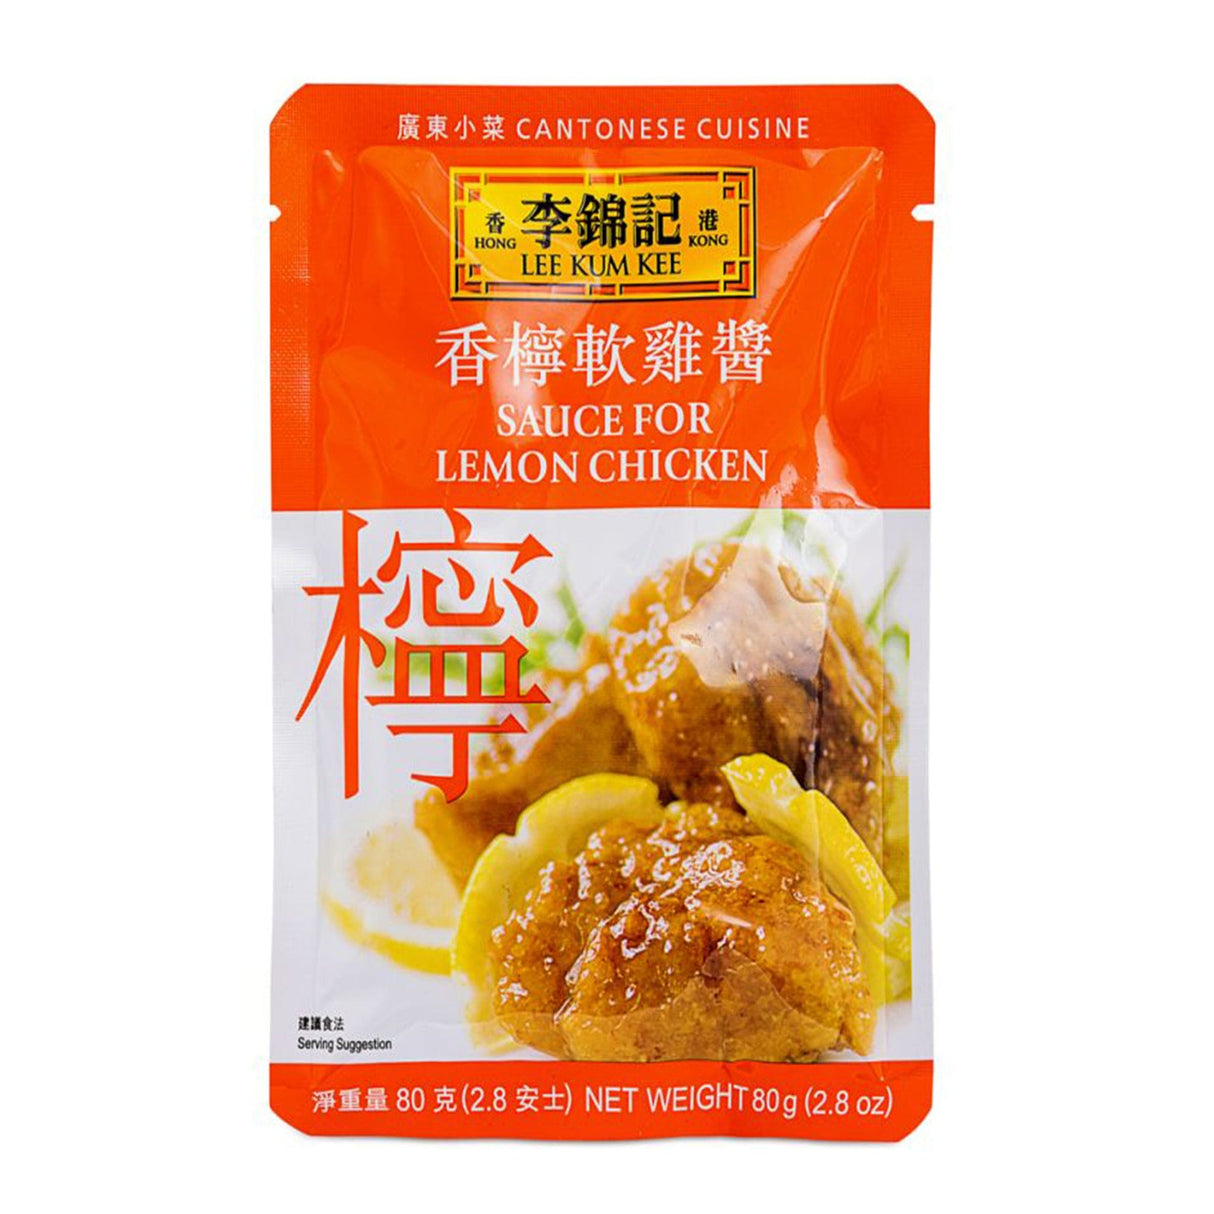 Lee Kum Kee Sauce For Lemon Chicken